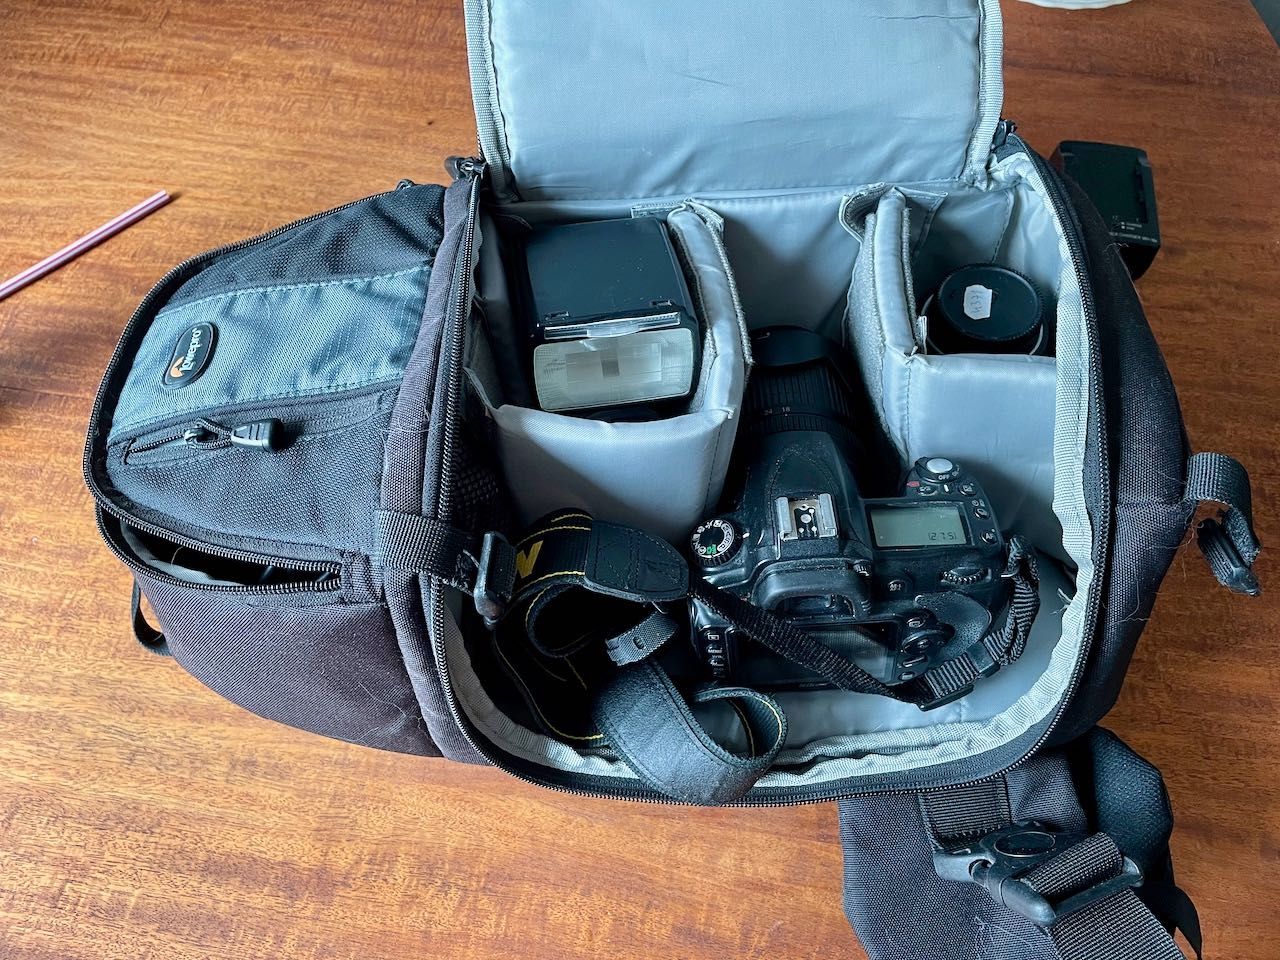 Nikon D90 + Kit 18-105 + 35 + SB900 + plecak